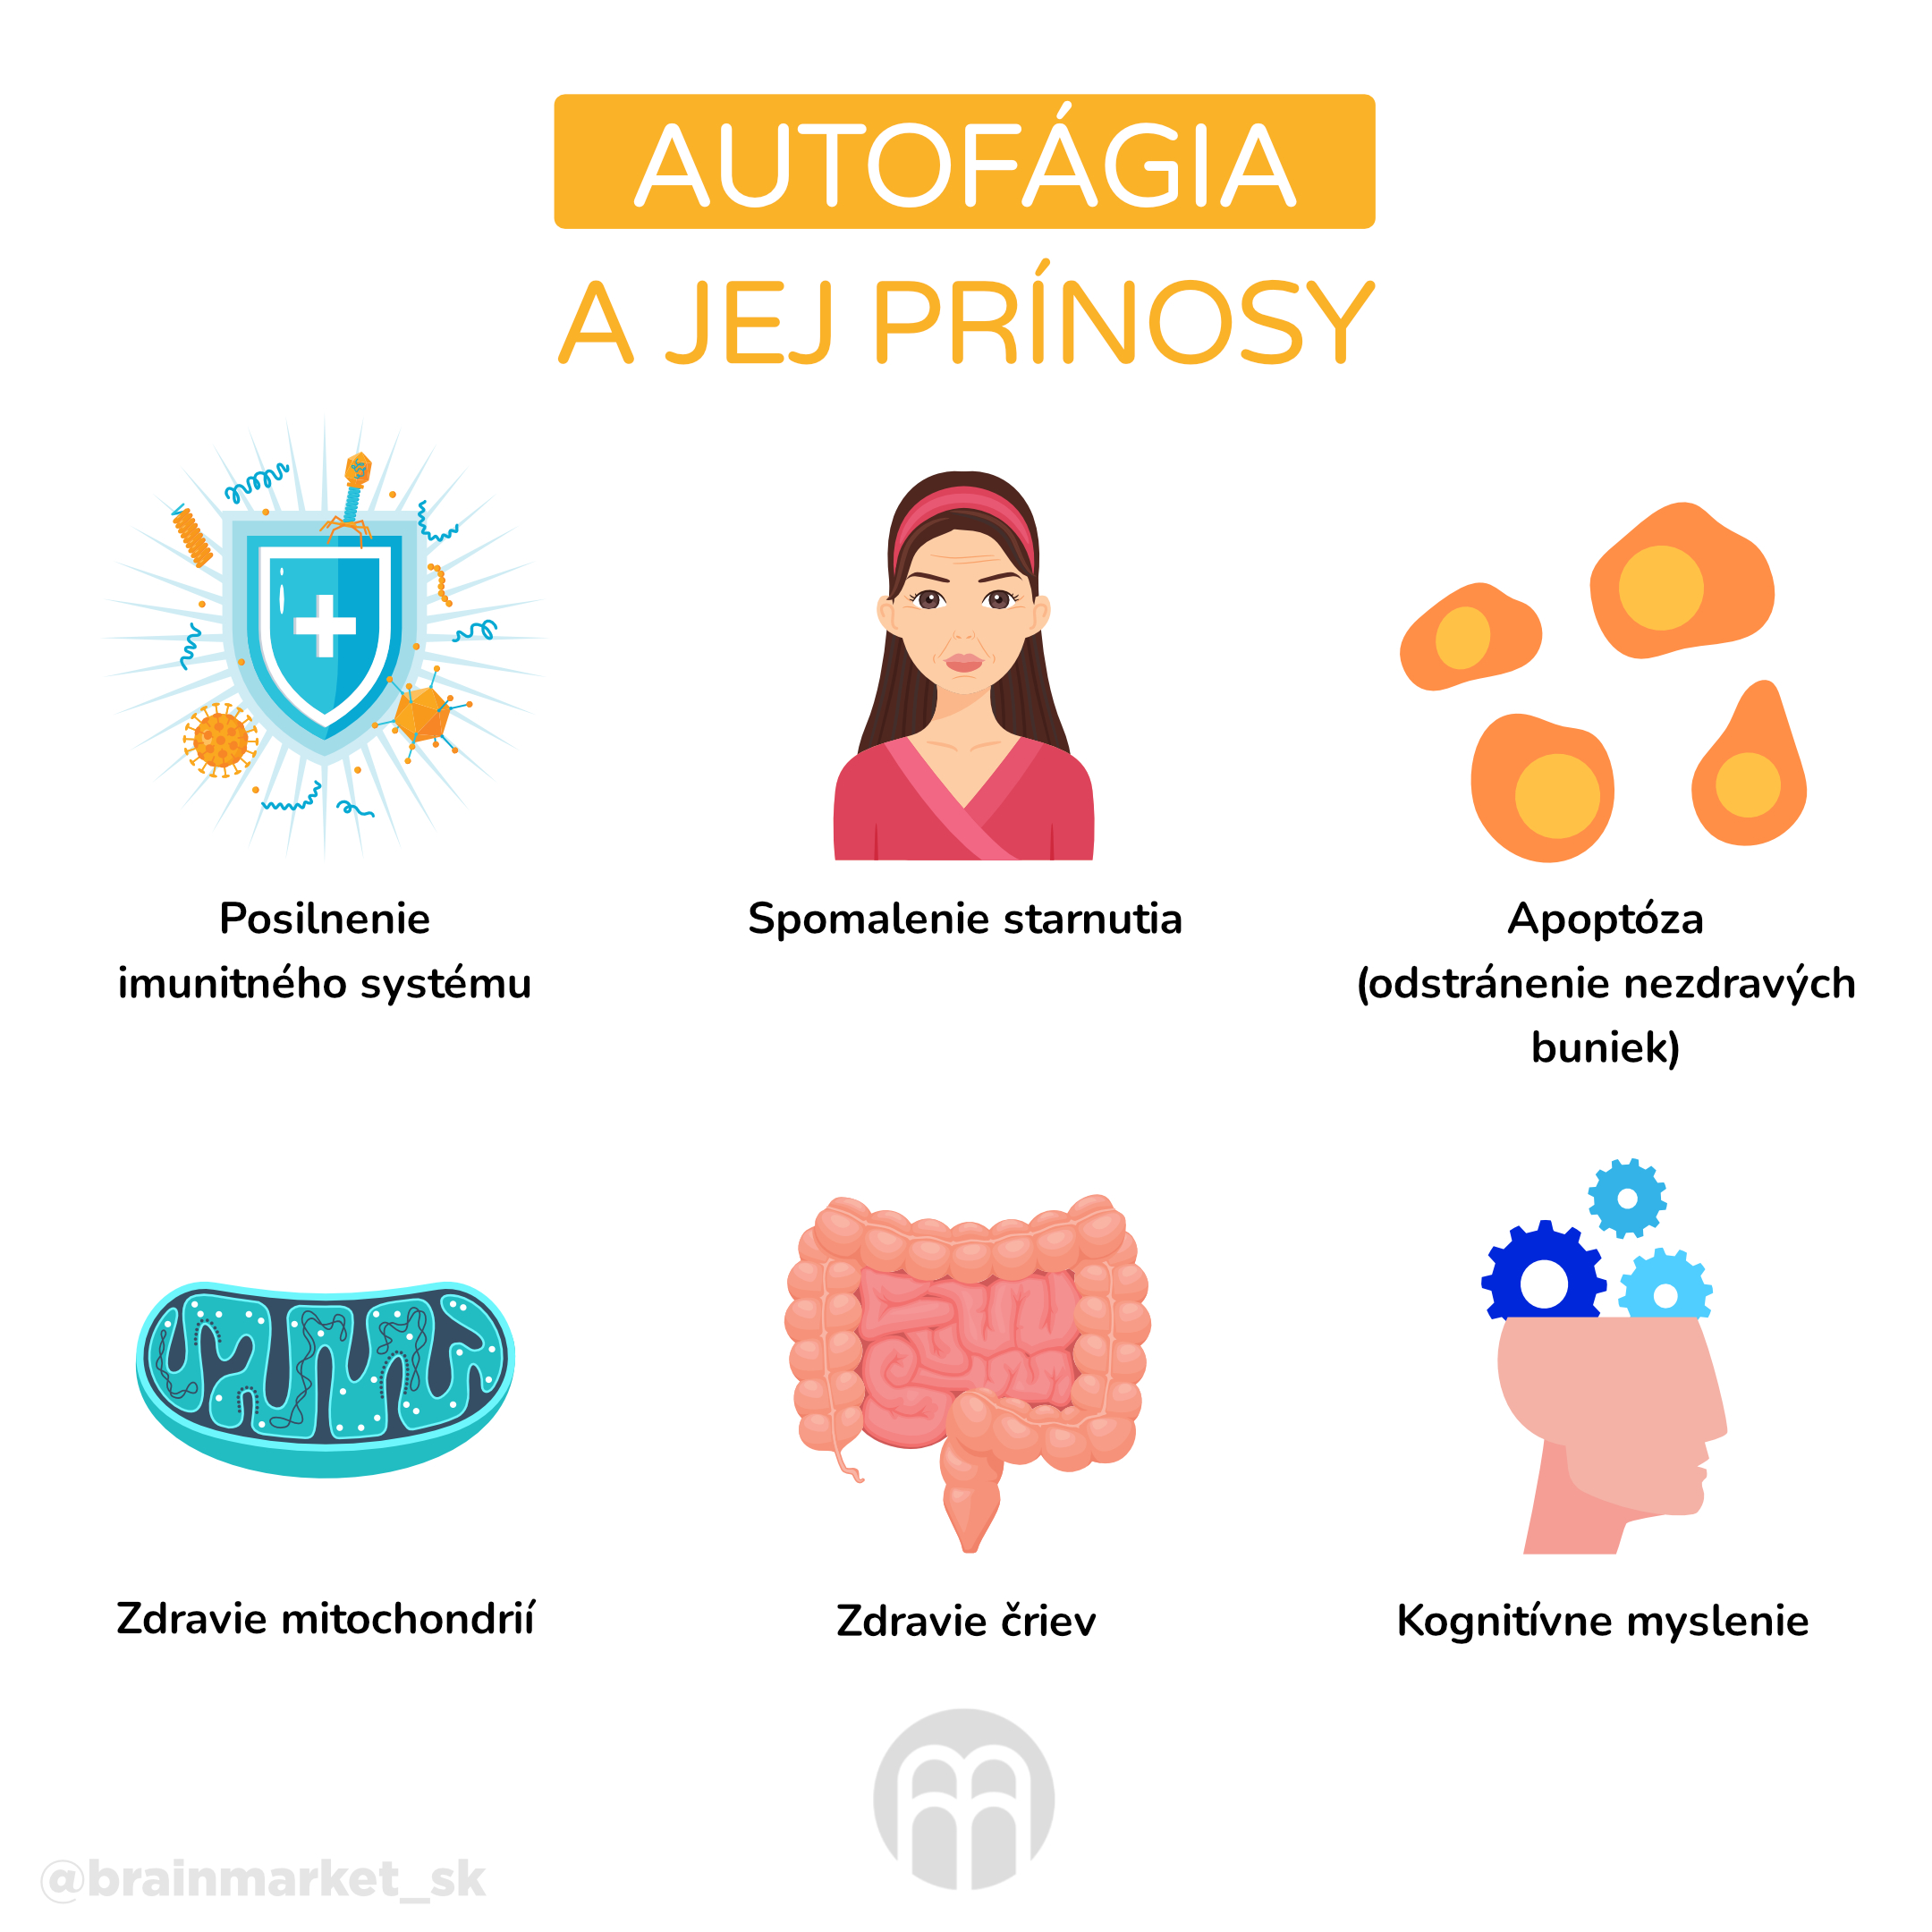 autofafie_a_jeji_prinosy_infografika_cz